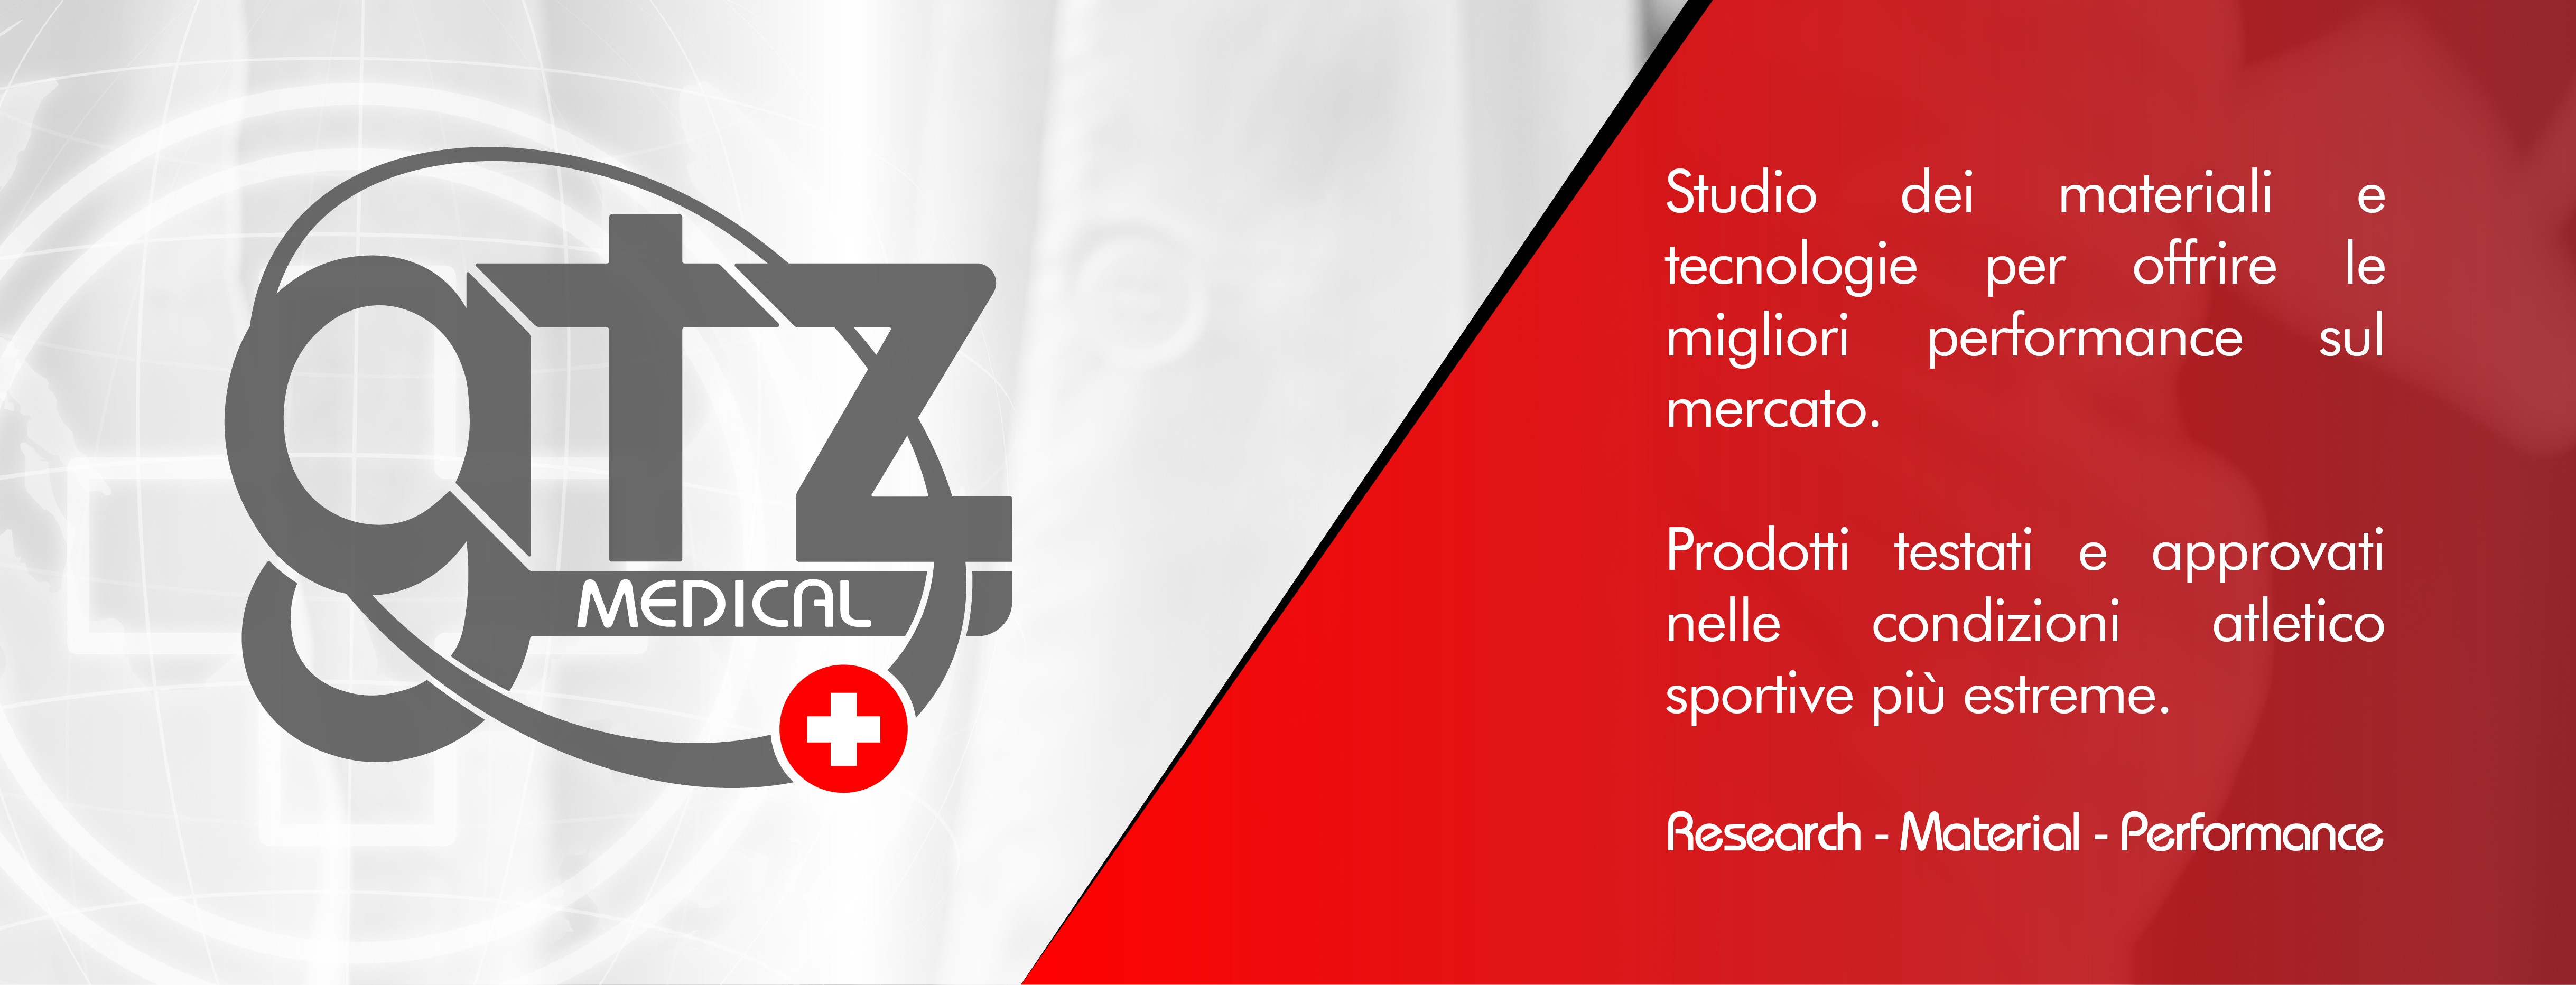 Presentazione GTZ Medical